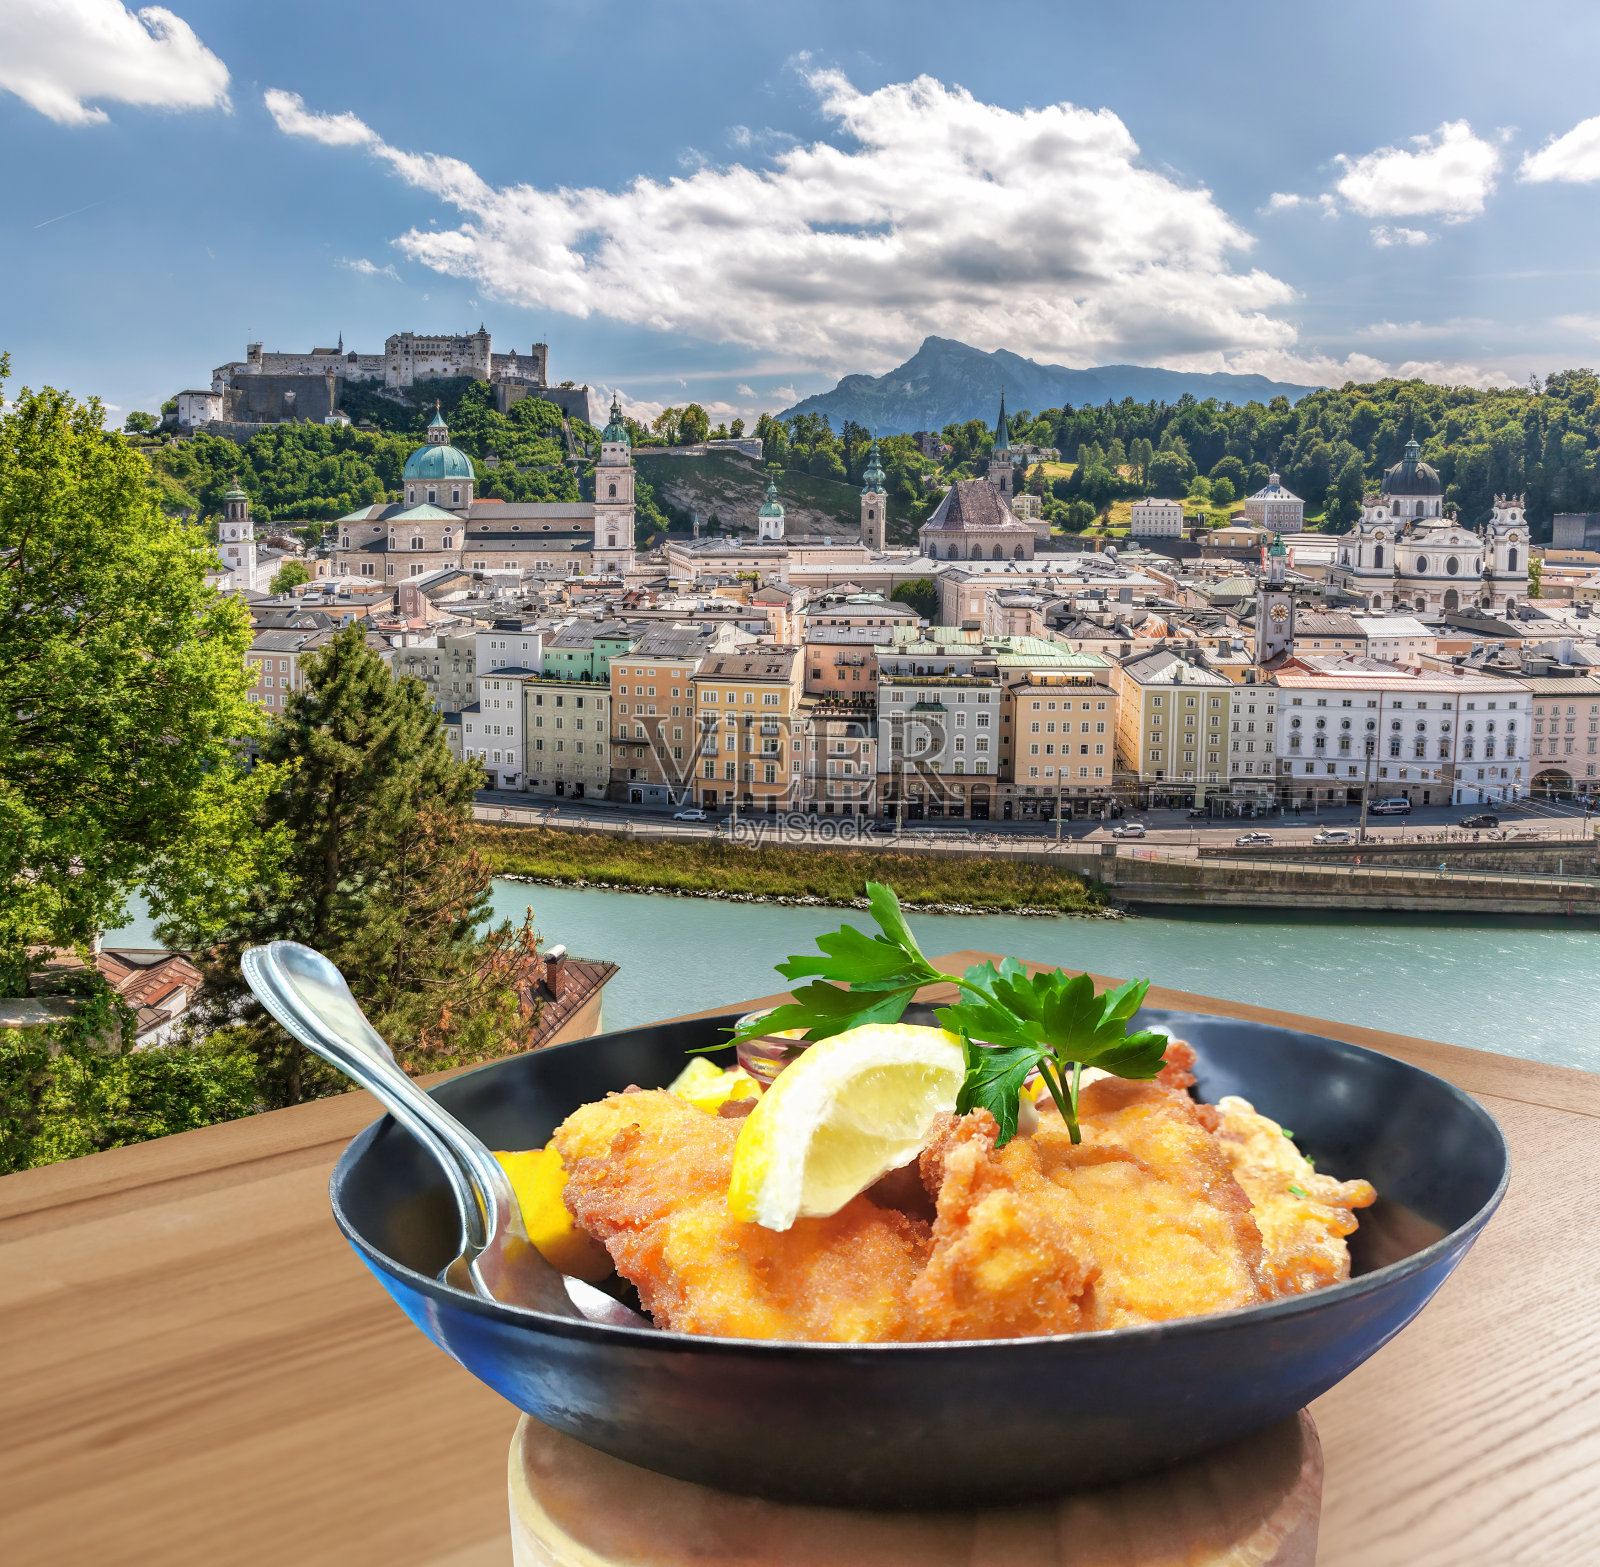 传统的奥地利美食(炸肉排)与萨尔茨堡城堡在奥地利照片摄影图片